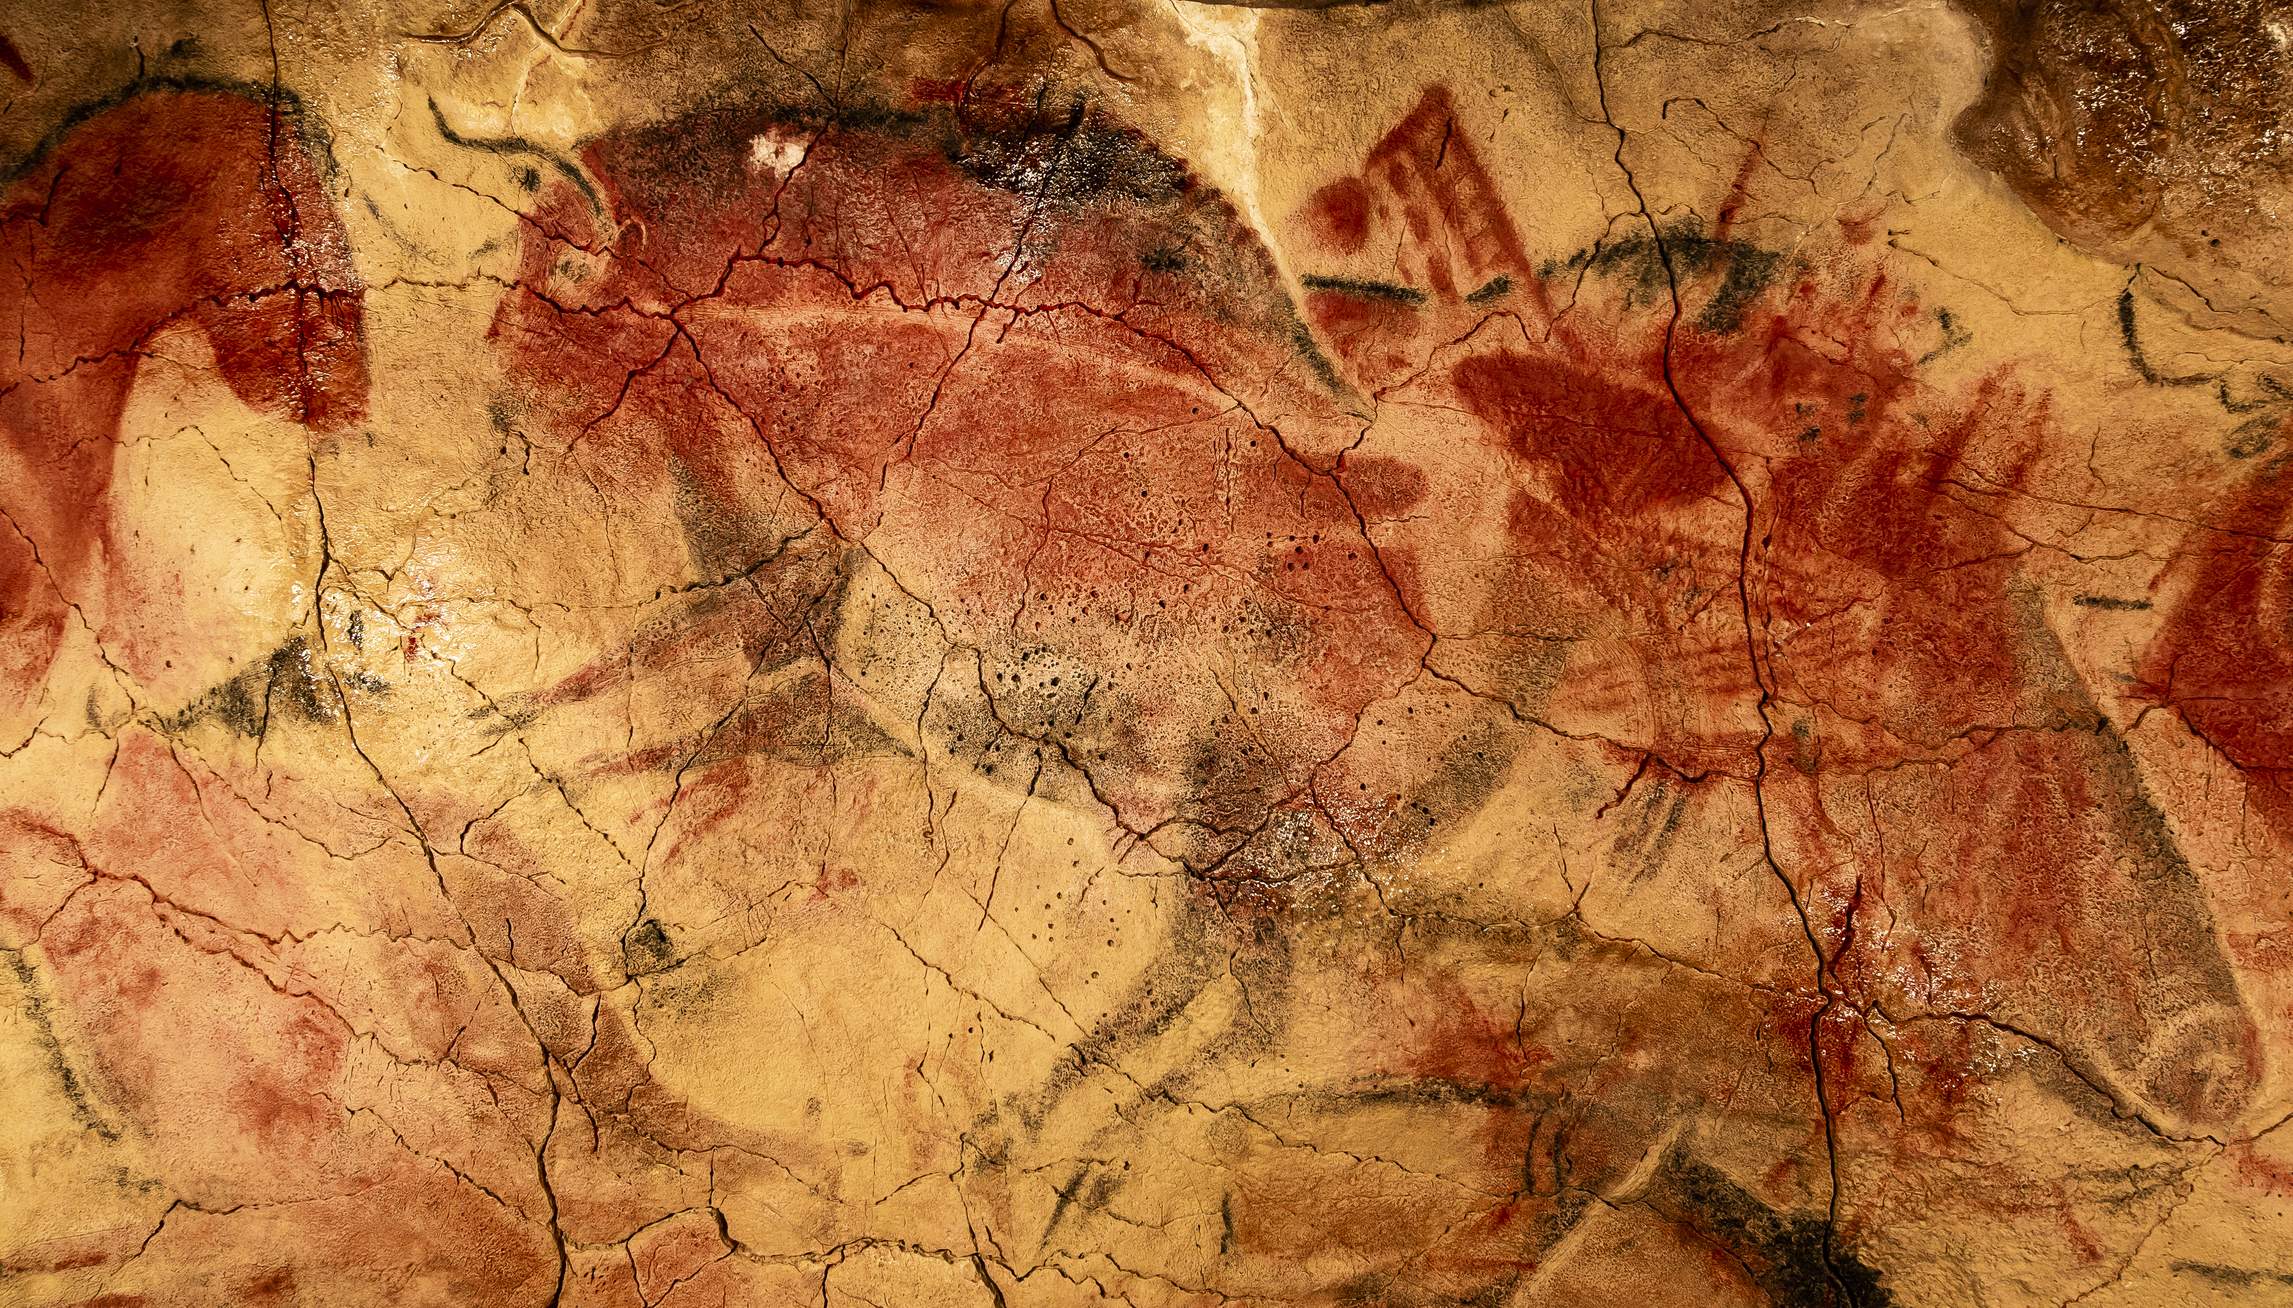 Pinturas rupestres de la cueva de Altamira

Paleolithic rock painting of a bison and a horse from the Altamira cave, Santillana del Mar, Cantabria, Spain
